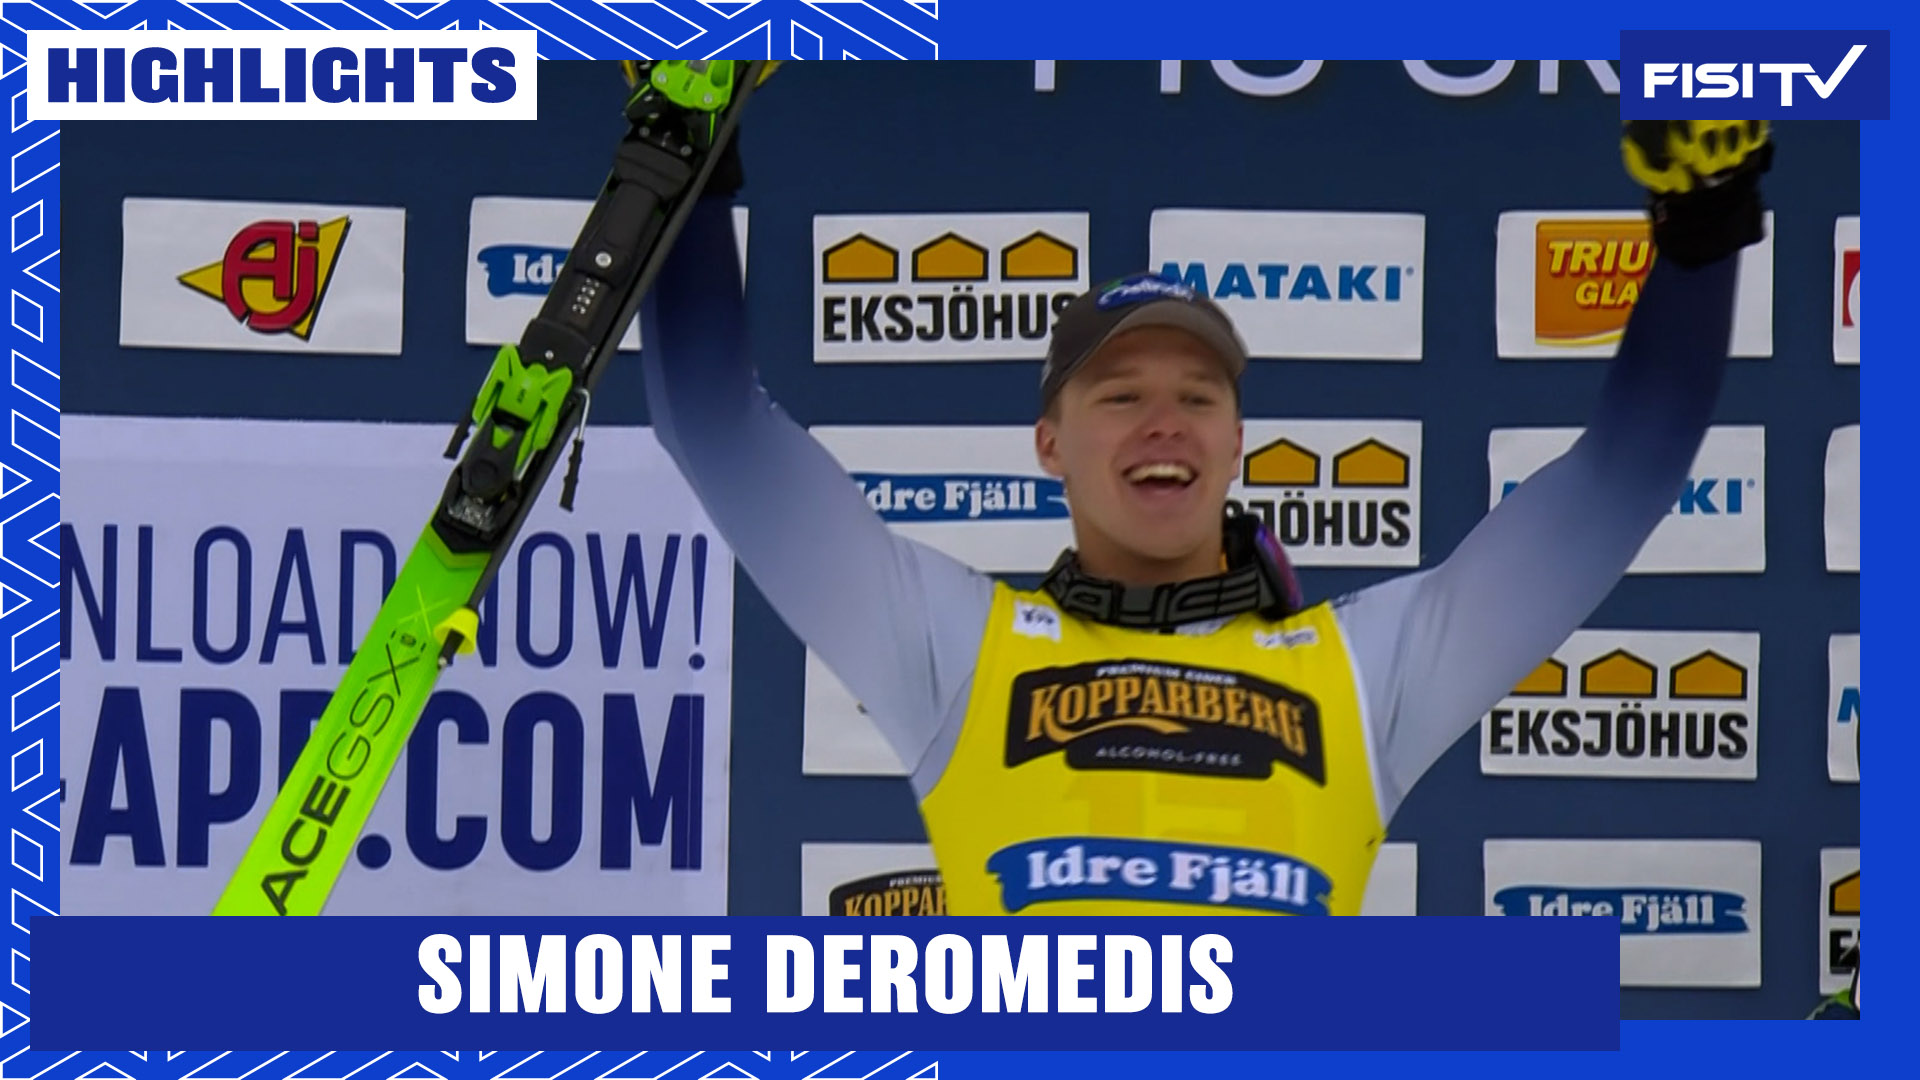 Incredibile rimonta di Simone Deromedis a Idre Fjall | FISI TV